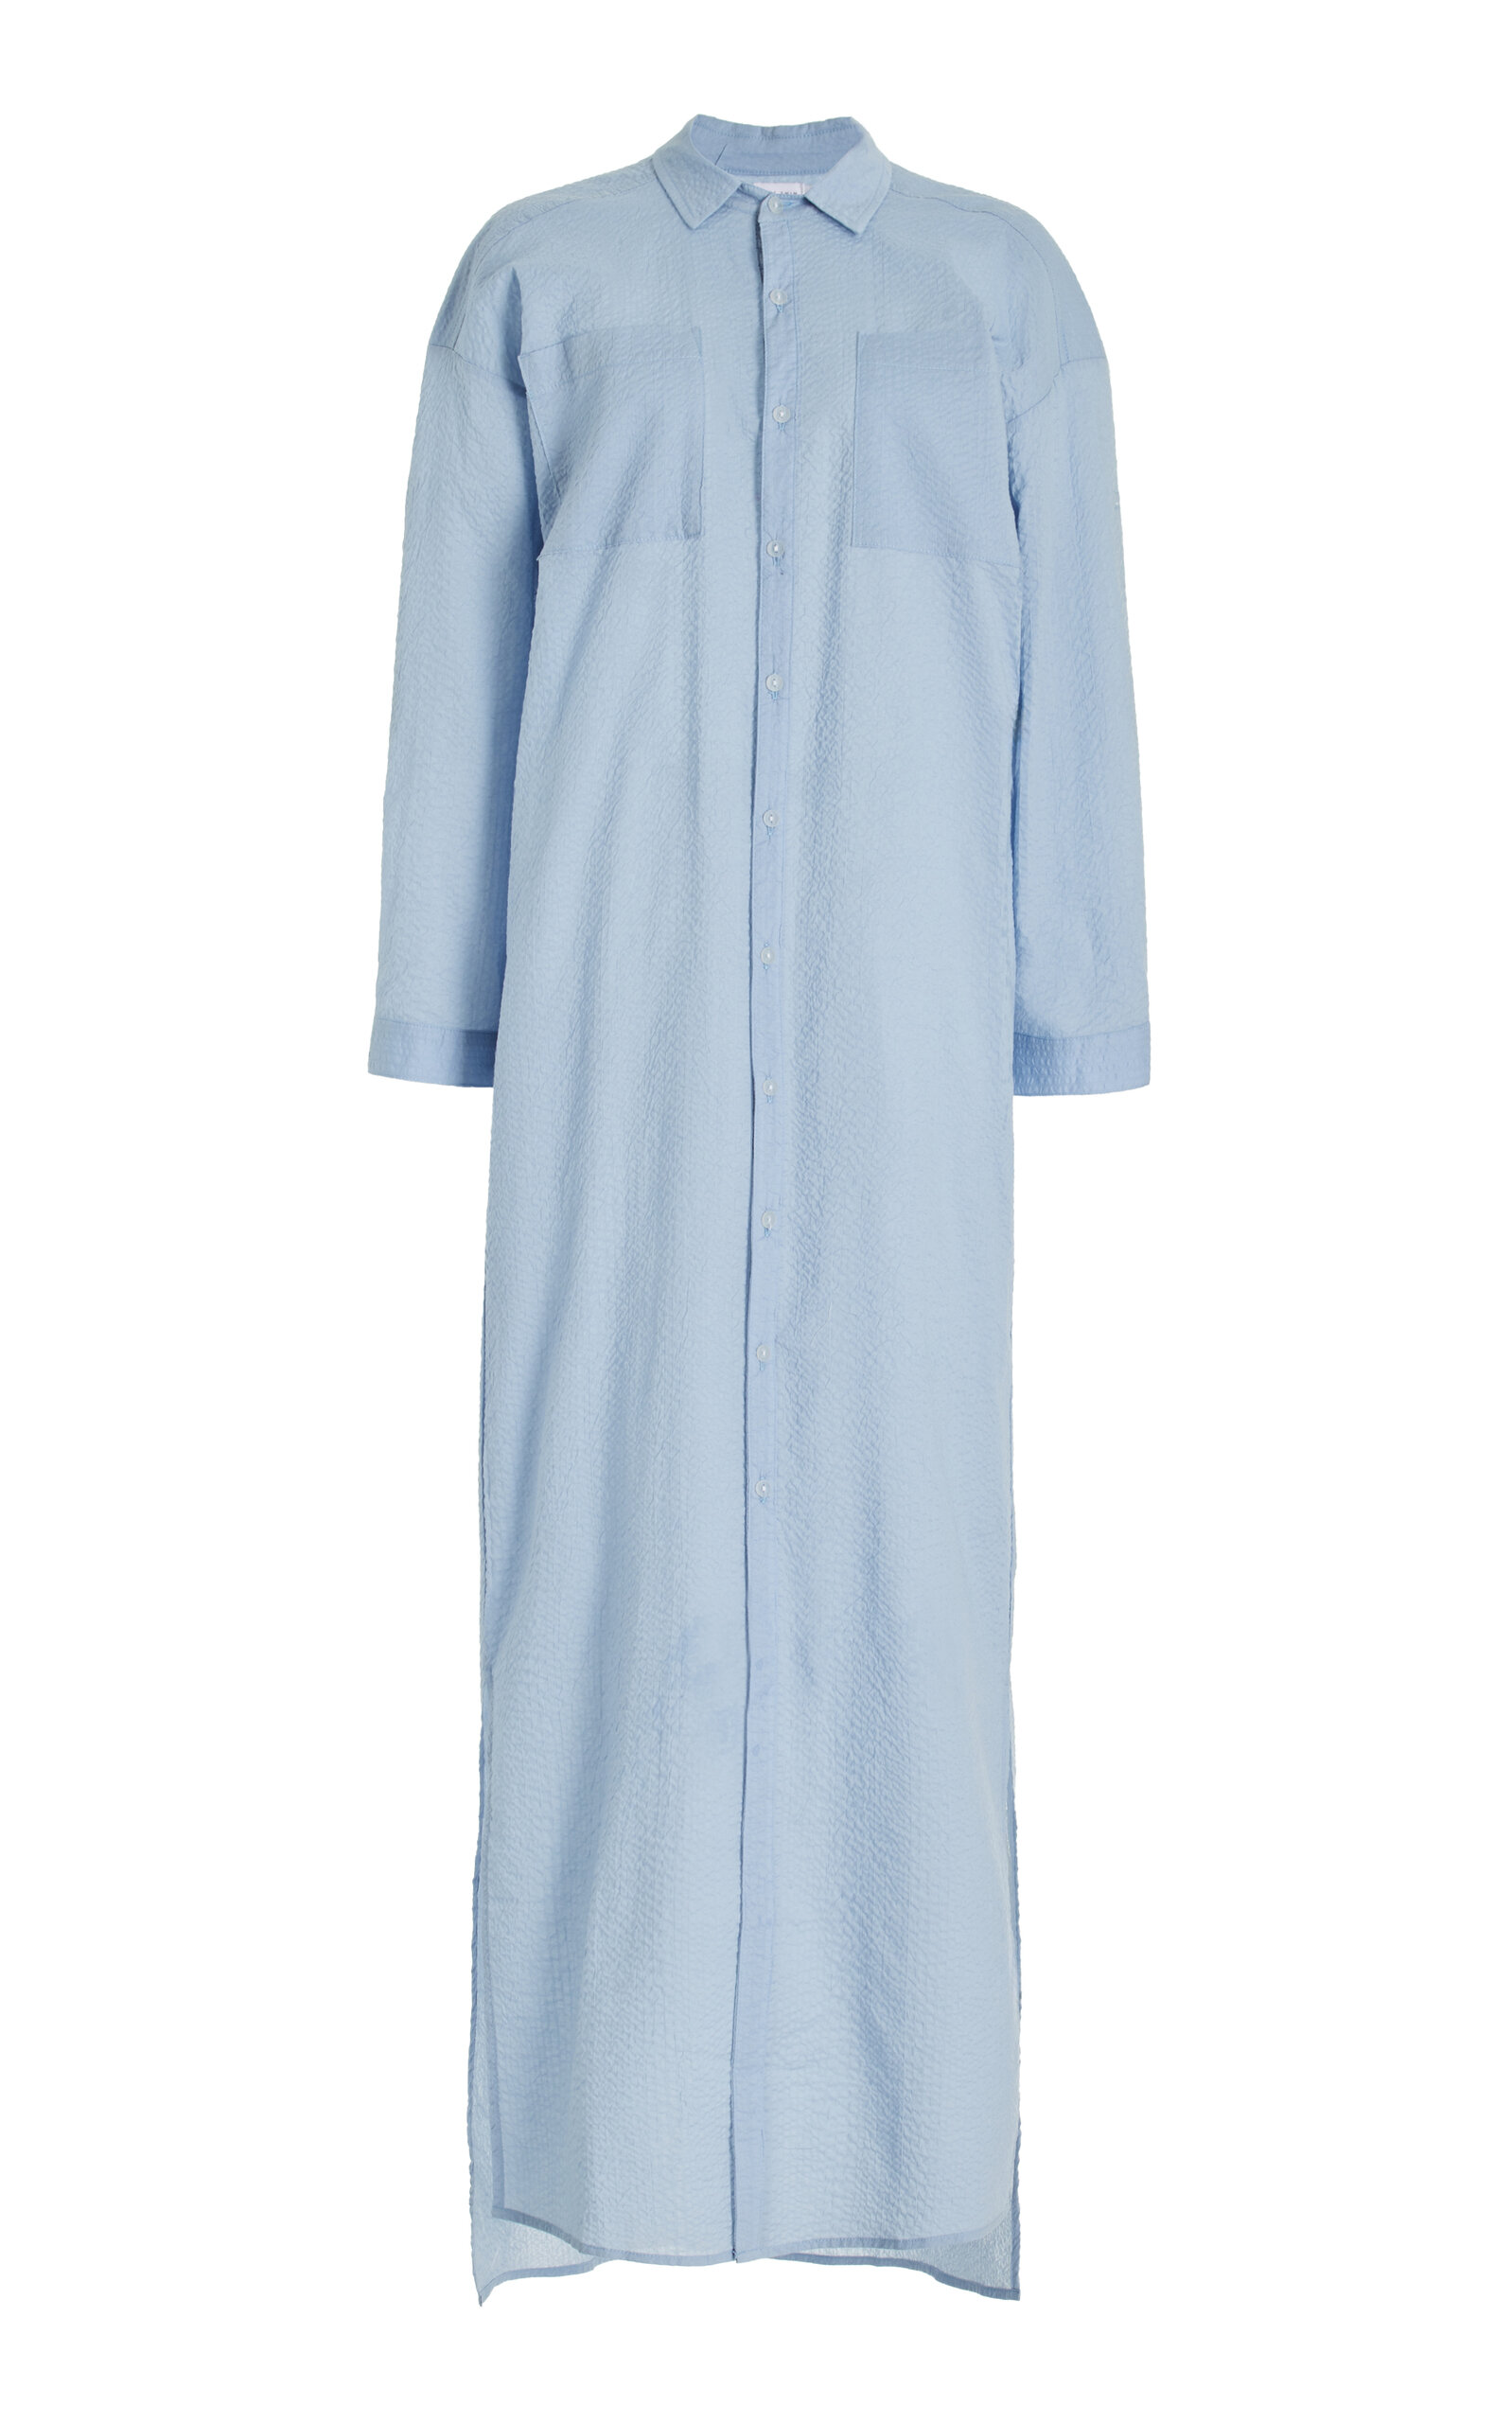 JADE SWIM - Mika Button-Down Maxi Dress - Blue - L/XL - Moda Operandi